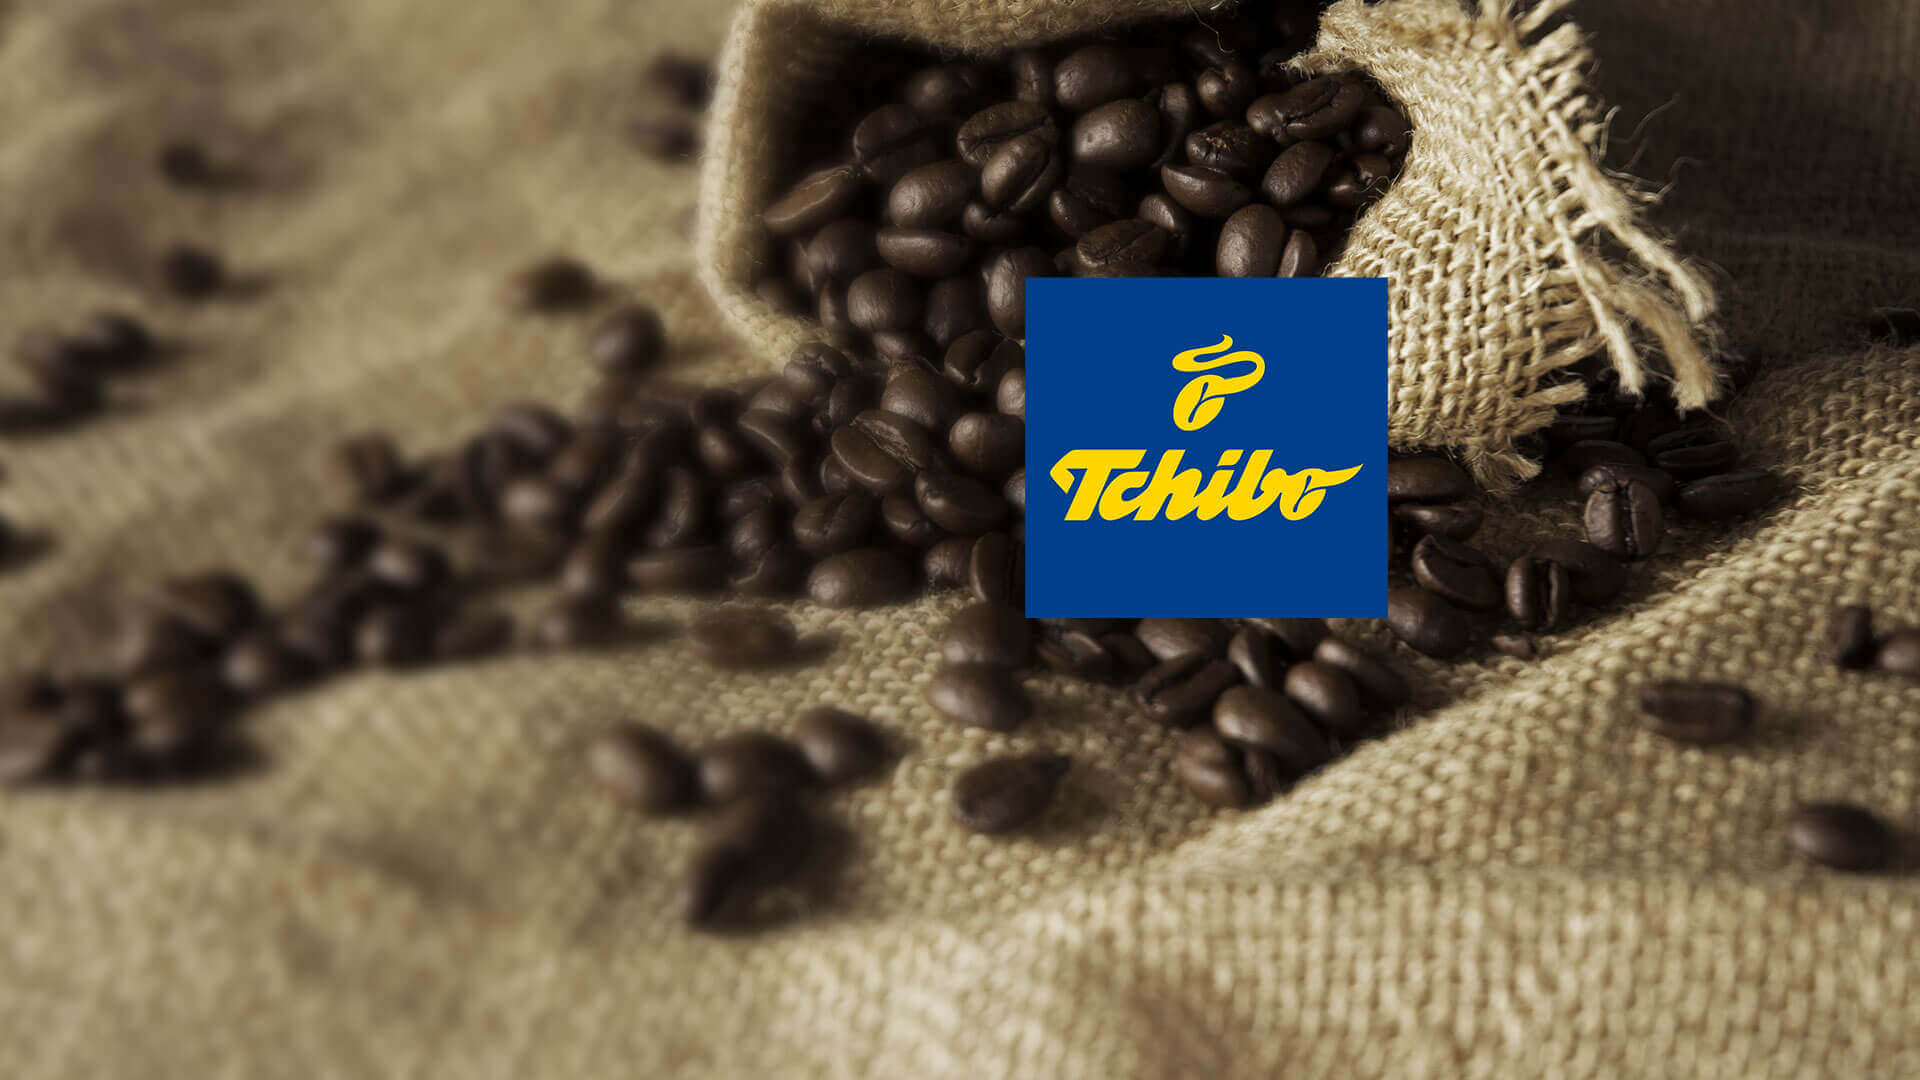 Znalezione obrazy dla zapytania tchibo Coffee in lublin